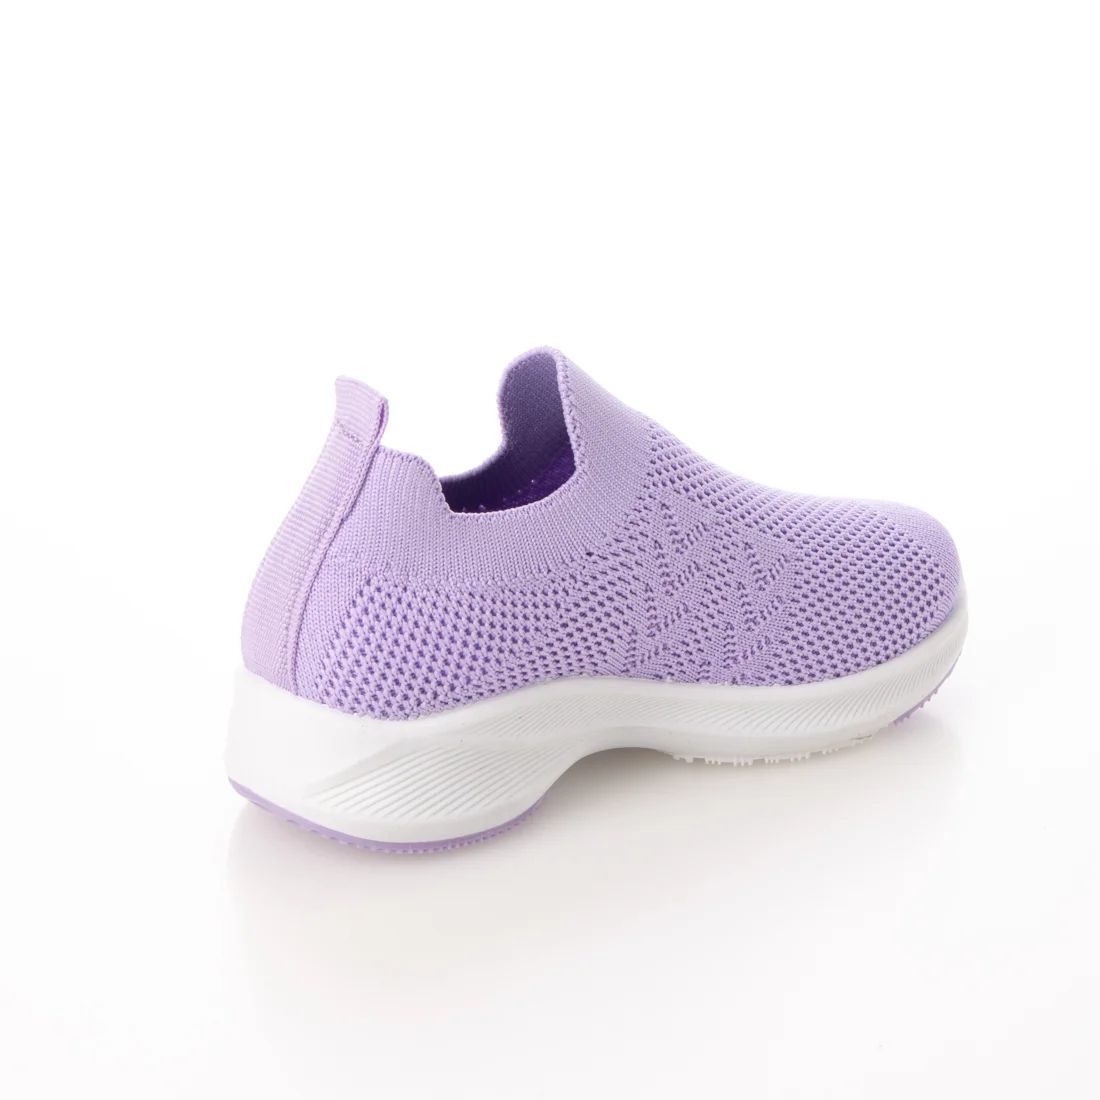 [ новый товар не использовался ]22918 Kids вязаный спортивные туфли лиловый 17.0cm фиолетовый 